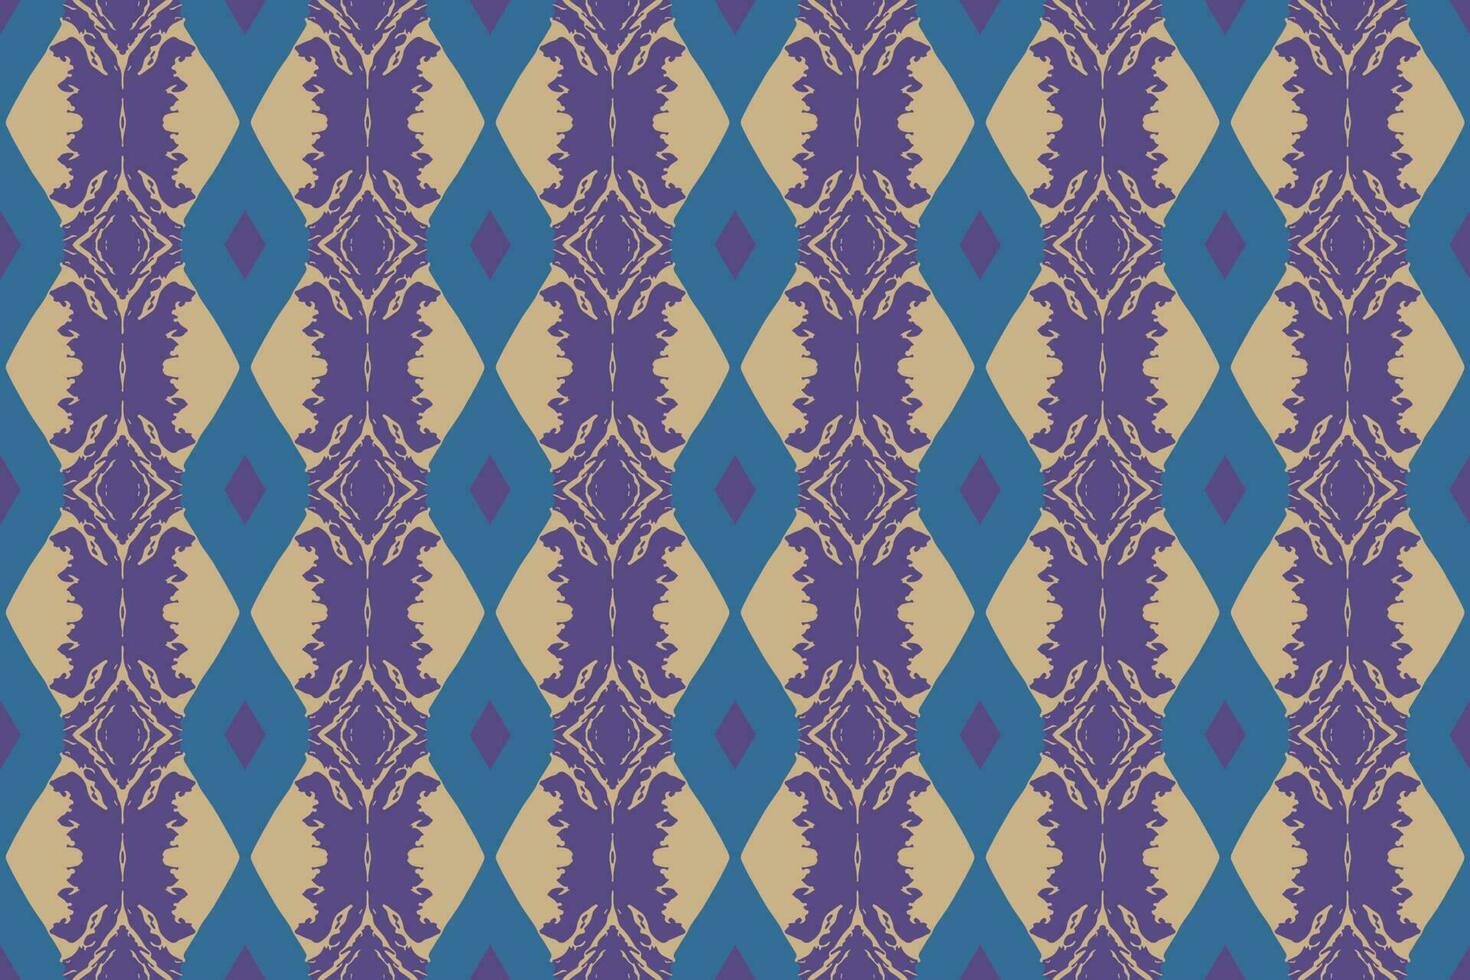 sin costura batik patrón, geométrico tribal patrón se parece étnico bohemio, azteca estilo, ikat estilo.lujo decorativo tela modelo para famoso banners.diseñados para utilizar tela, cortina, alfombra, batik vector